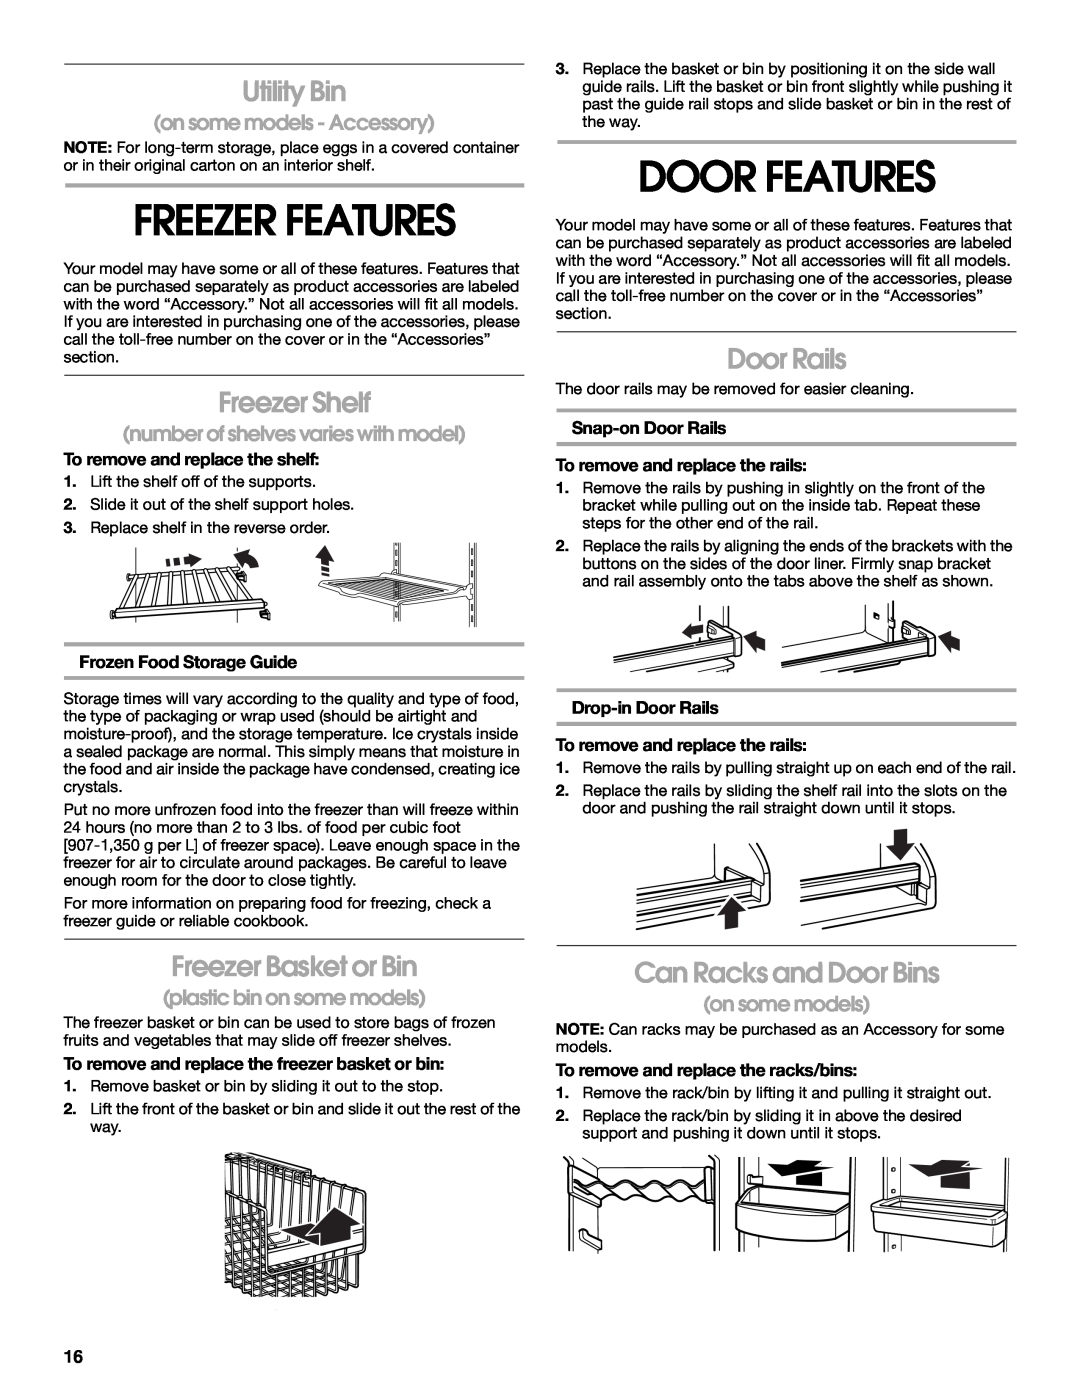 Whirlpool 2188766 manual Door Features, Freezer Features, Utility Bin, Freezer Shelf, Door Rails, Freezer Basket or Bin 